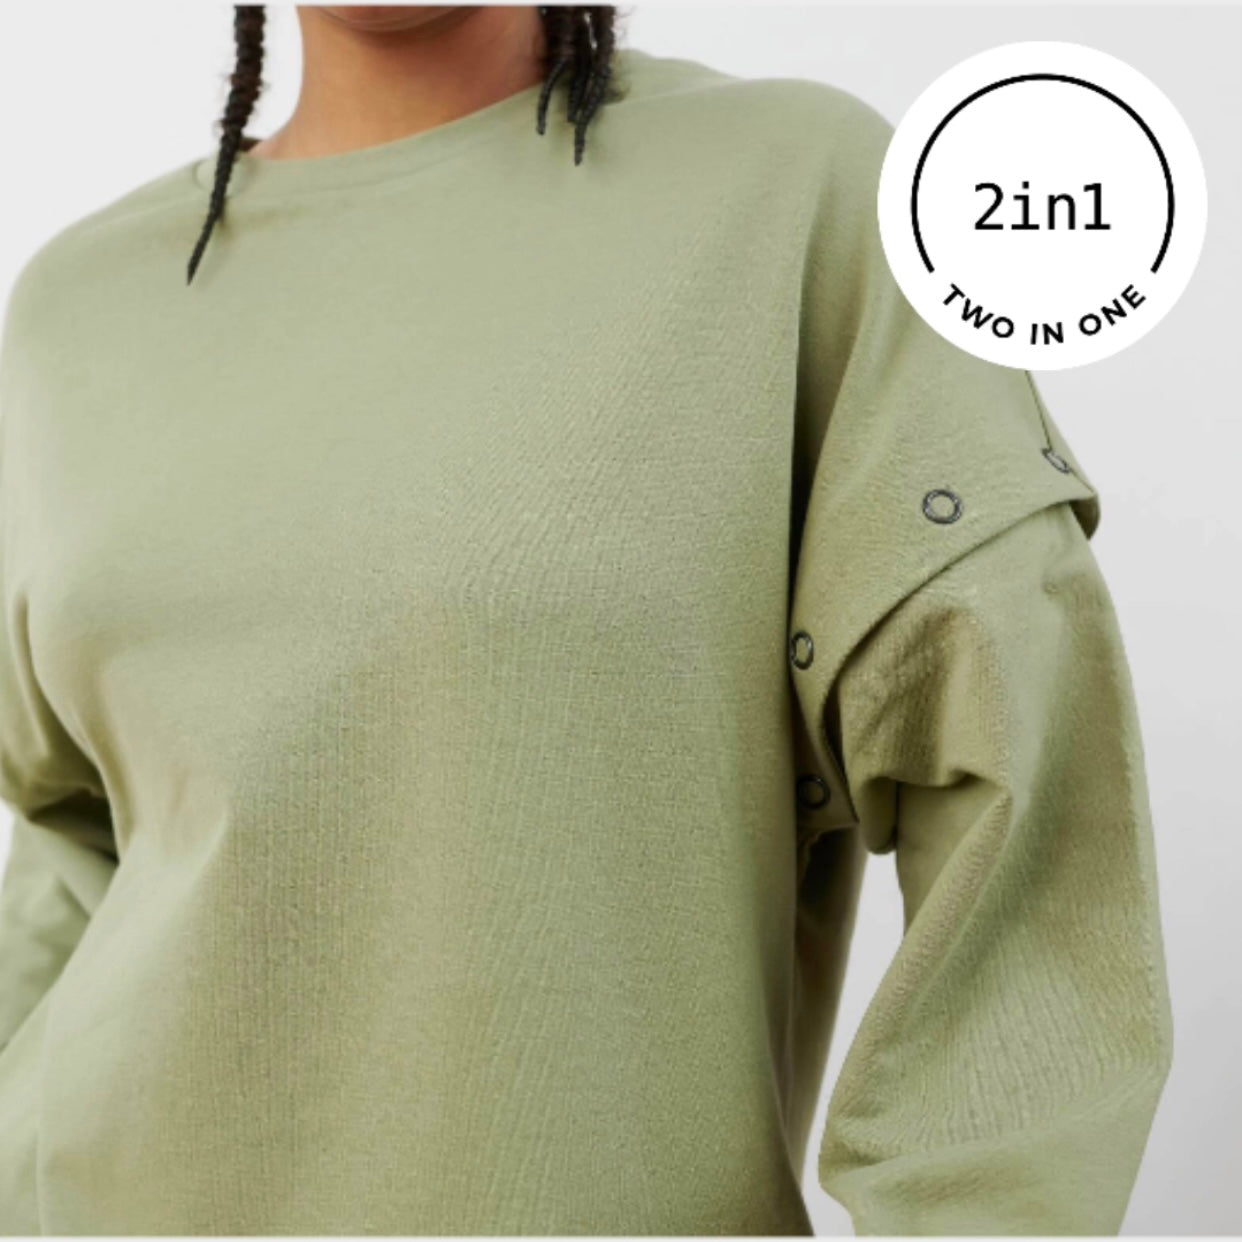 Ausschnitt zeigt abhembaren Ärmel von sagefarbenem 2IN1-Sweatshirt am Körper einer Frau mit weißem, rundem 2IN1-Icon